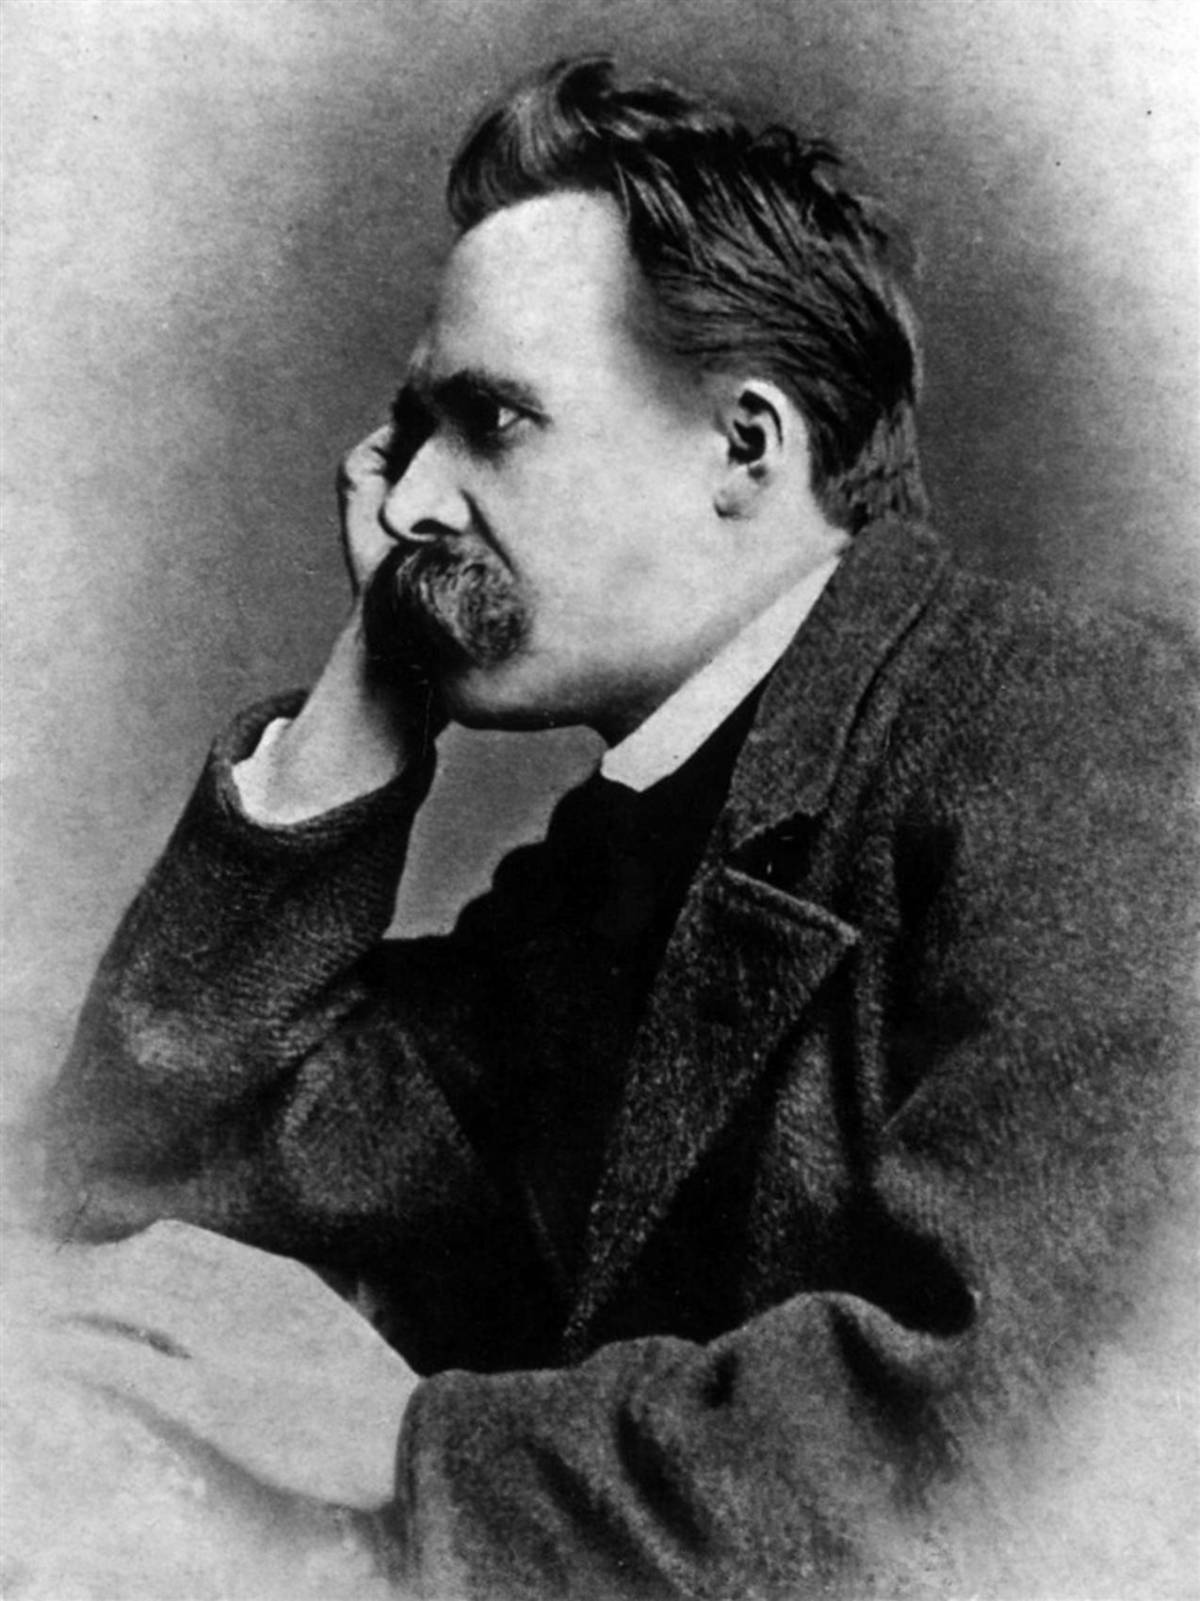 Tutta la forza dionisiaca e senza confini che animava il giovane Friedrich Nietzsche